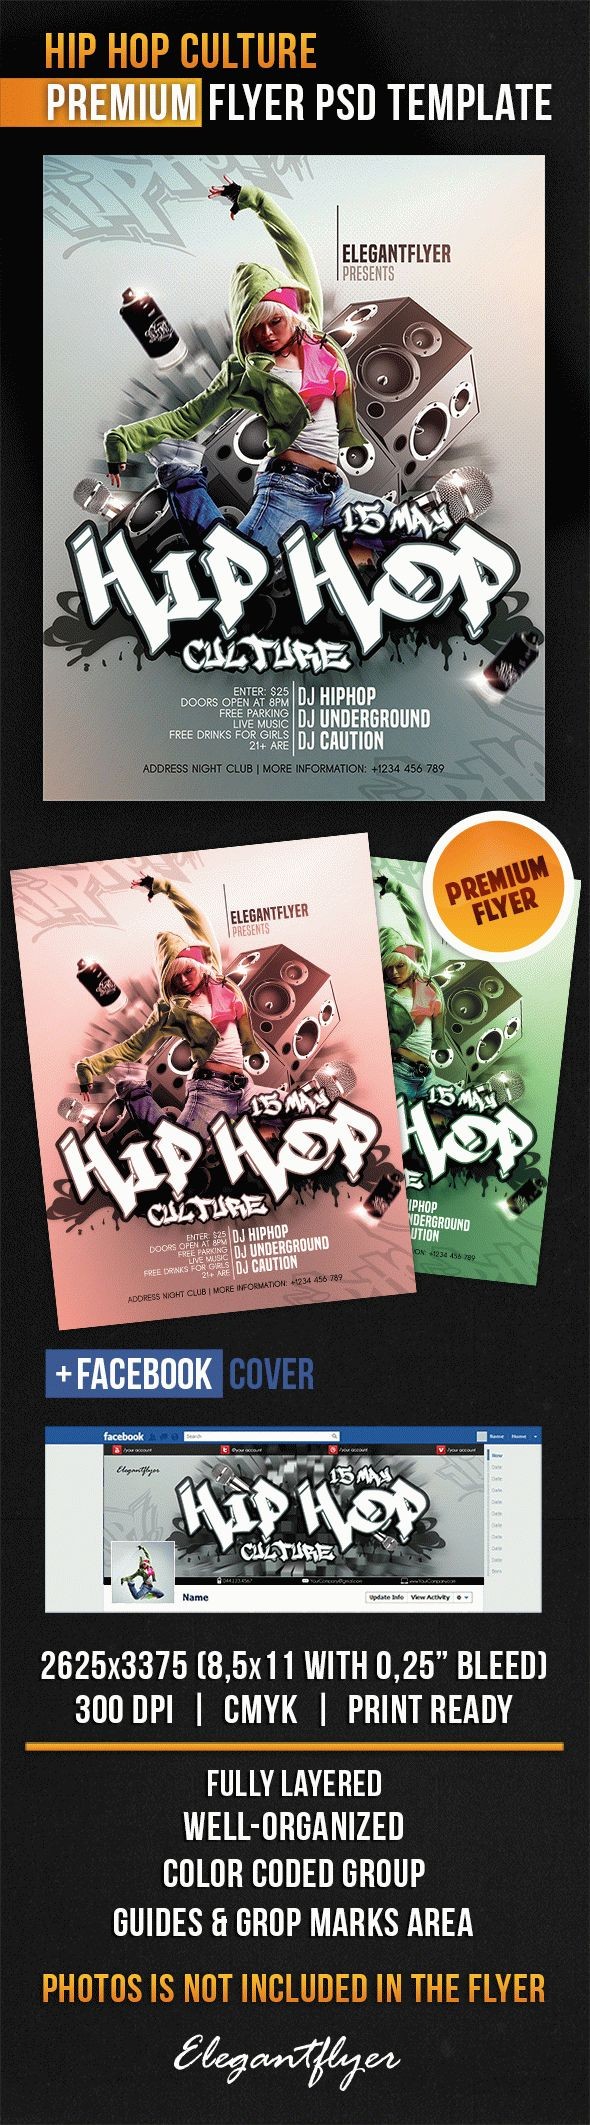 Hip Hop-Kultur by ElegantFlyer